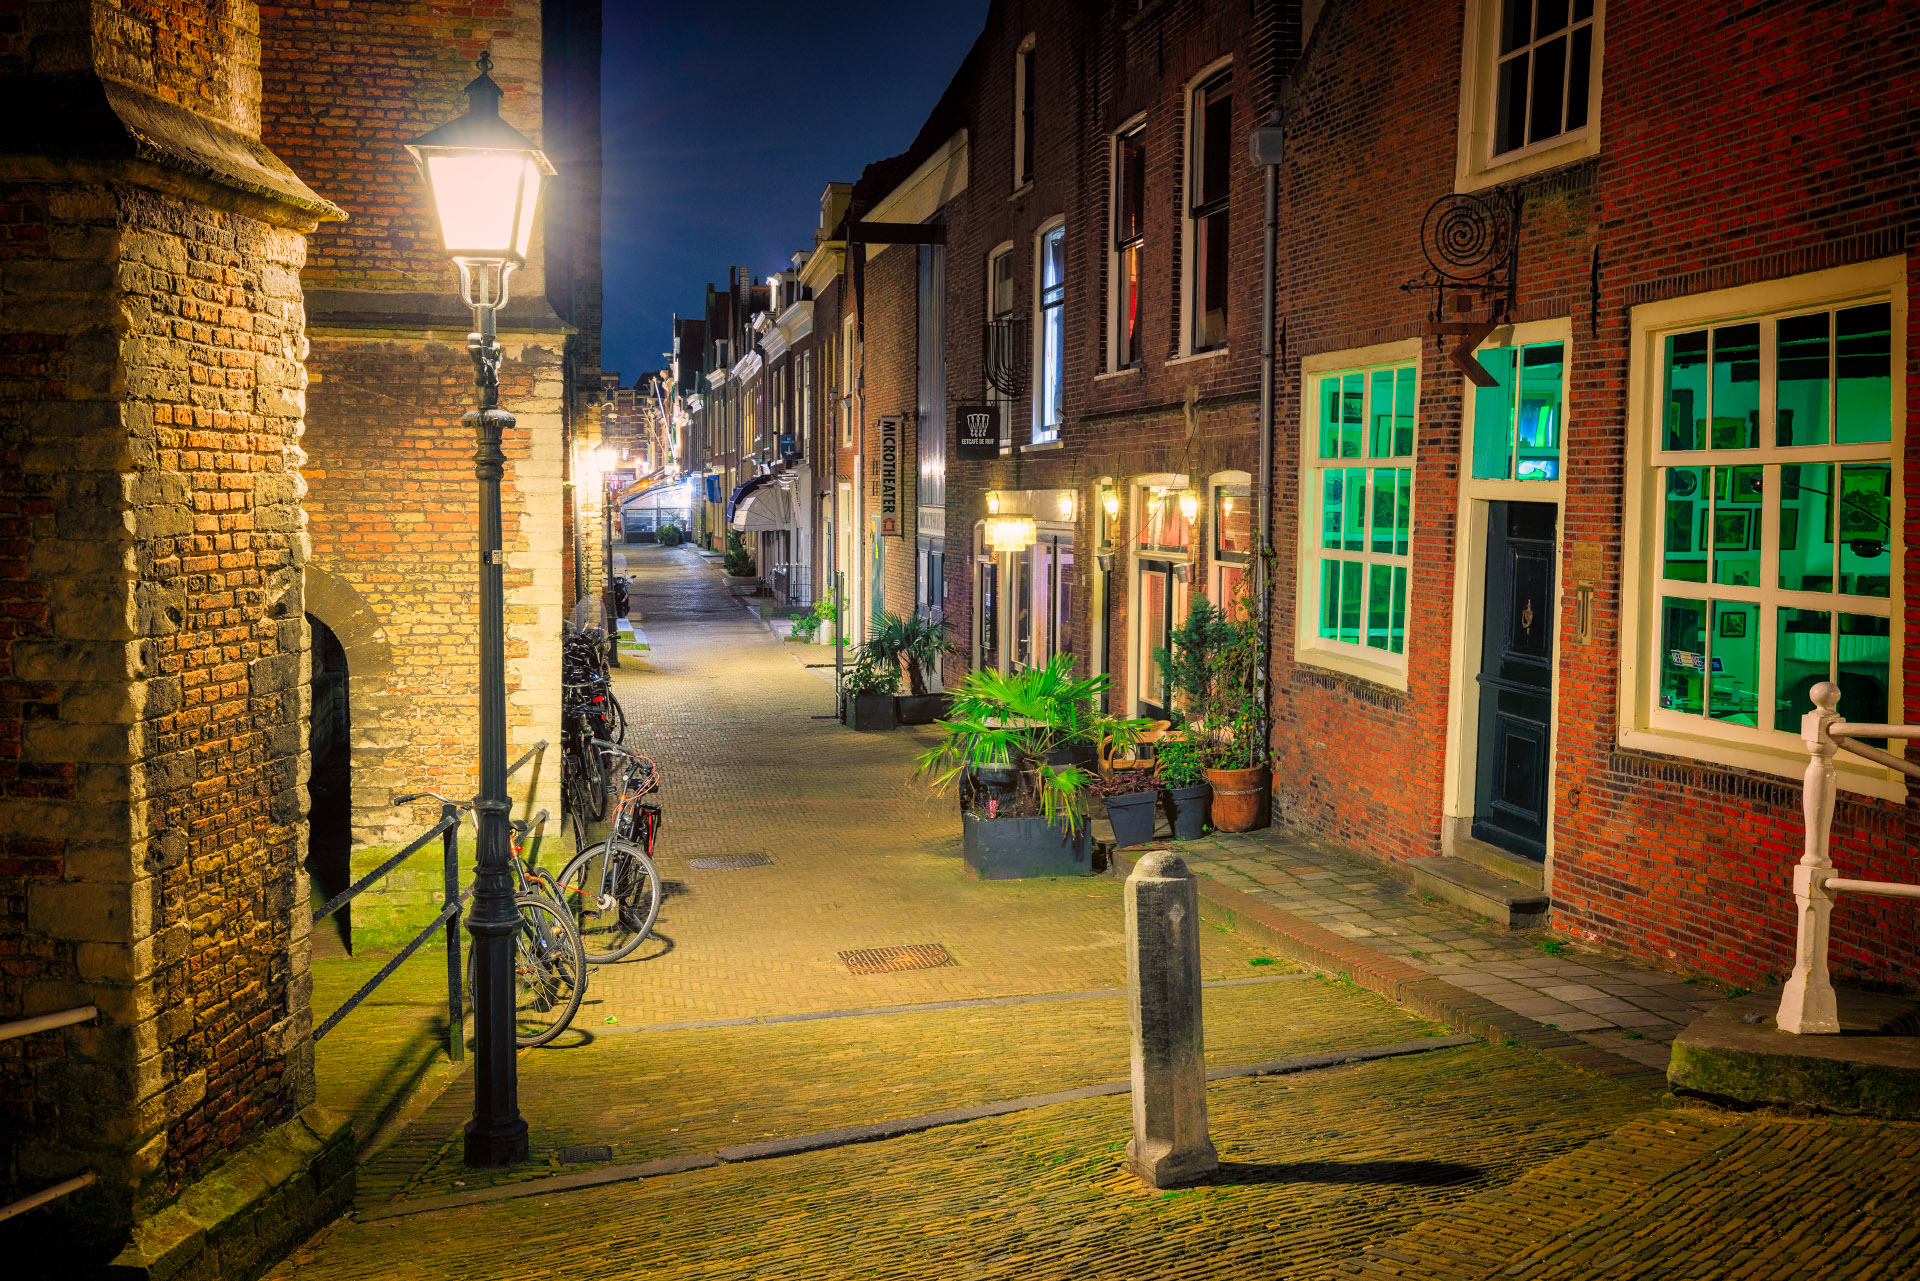 De Kerkstraat in Delft bij nacht naast de bekende Nieuwe Kerk van Delft. Een mooie oude stad met karakteristieke oude steegjes.